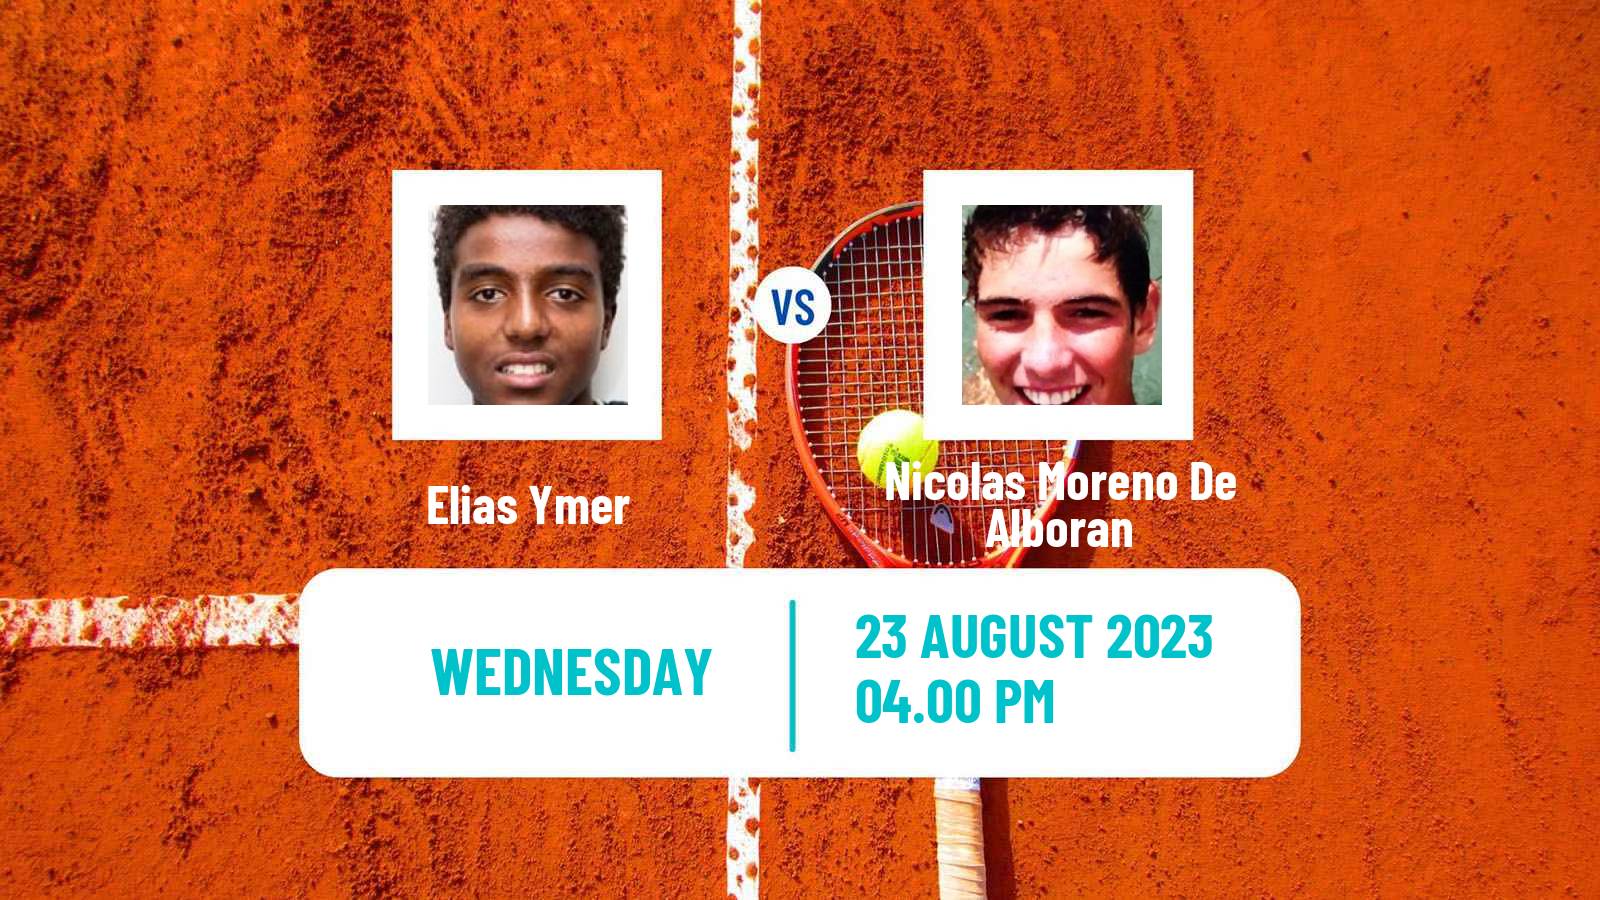 Tennis ATP US Open Elias Ymer - Nicolas Moreno De Alboran